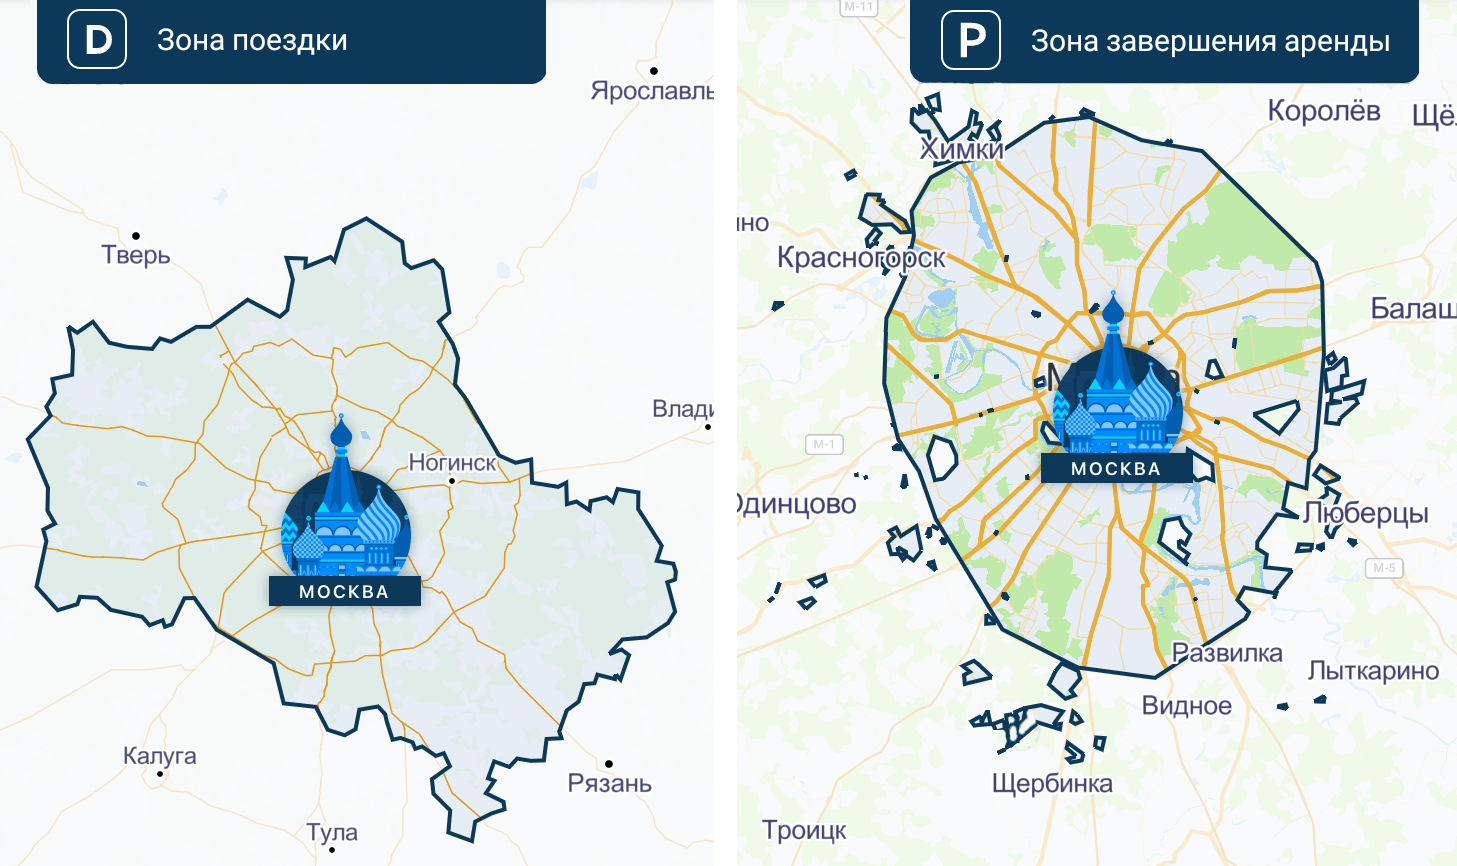 Мтс карта 5g покрытия в москве